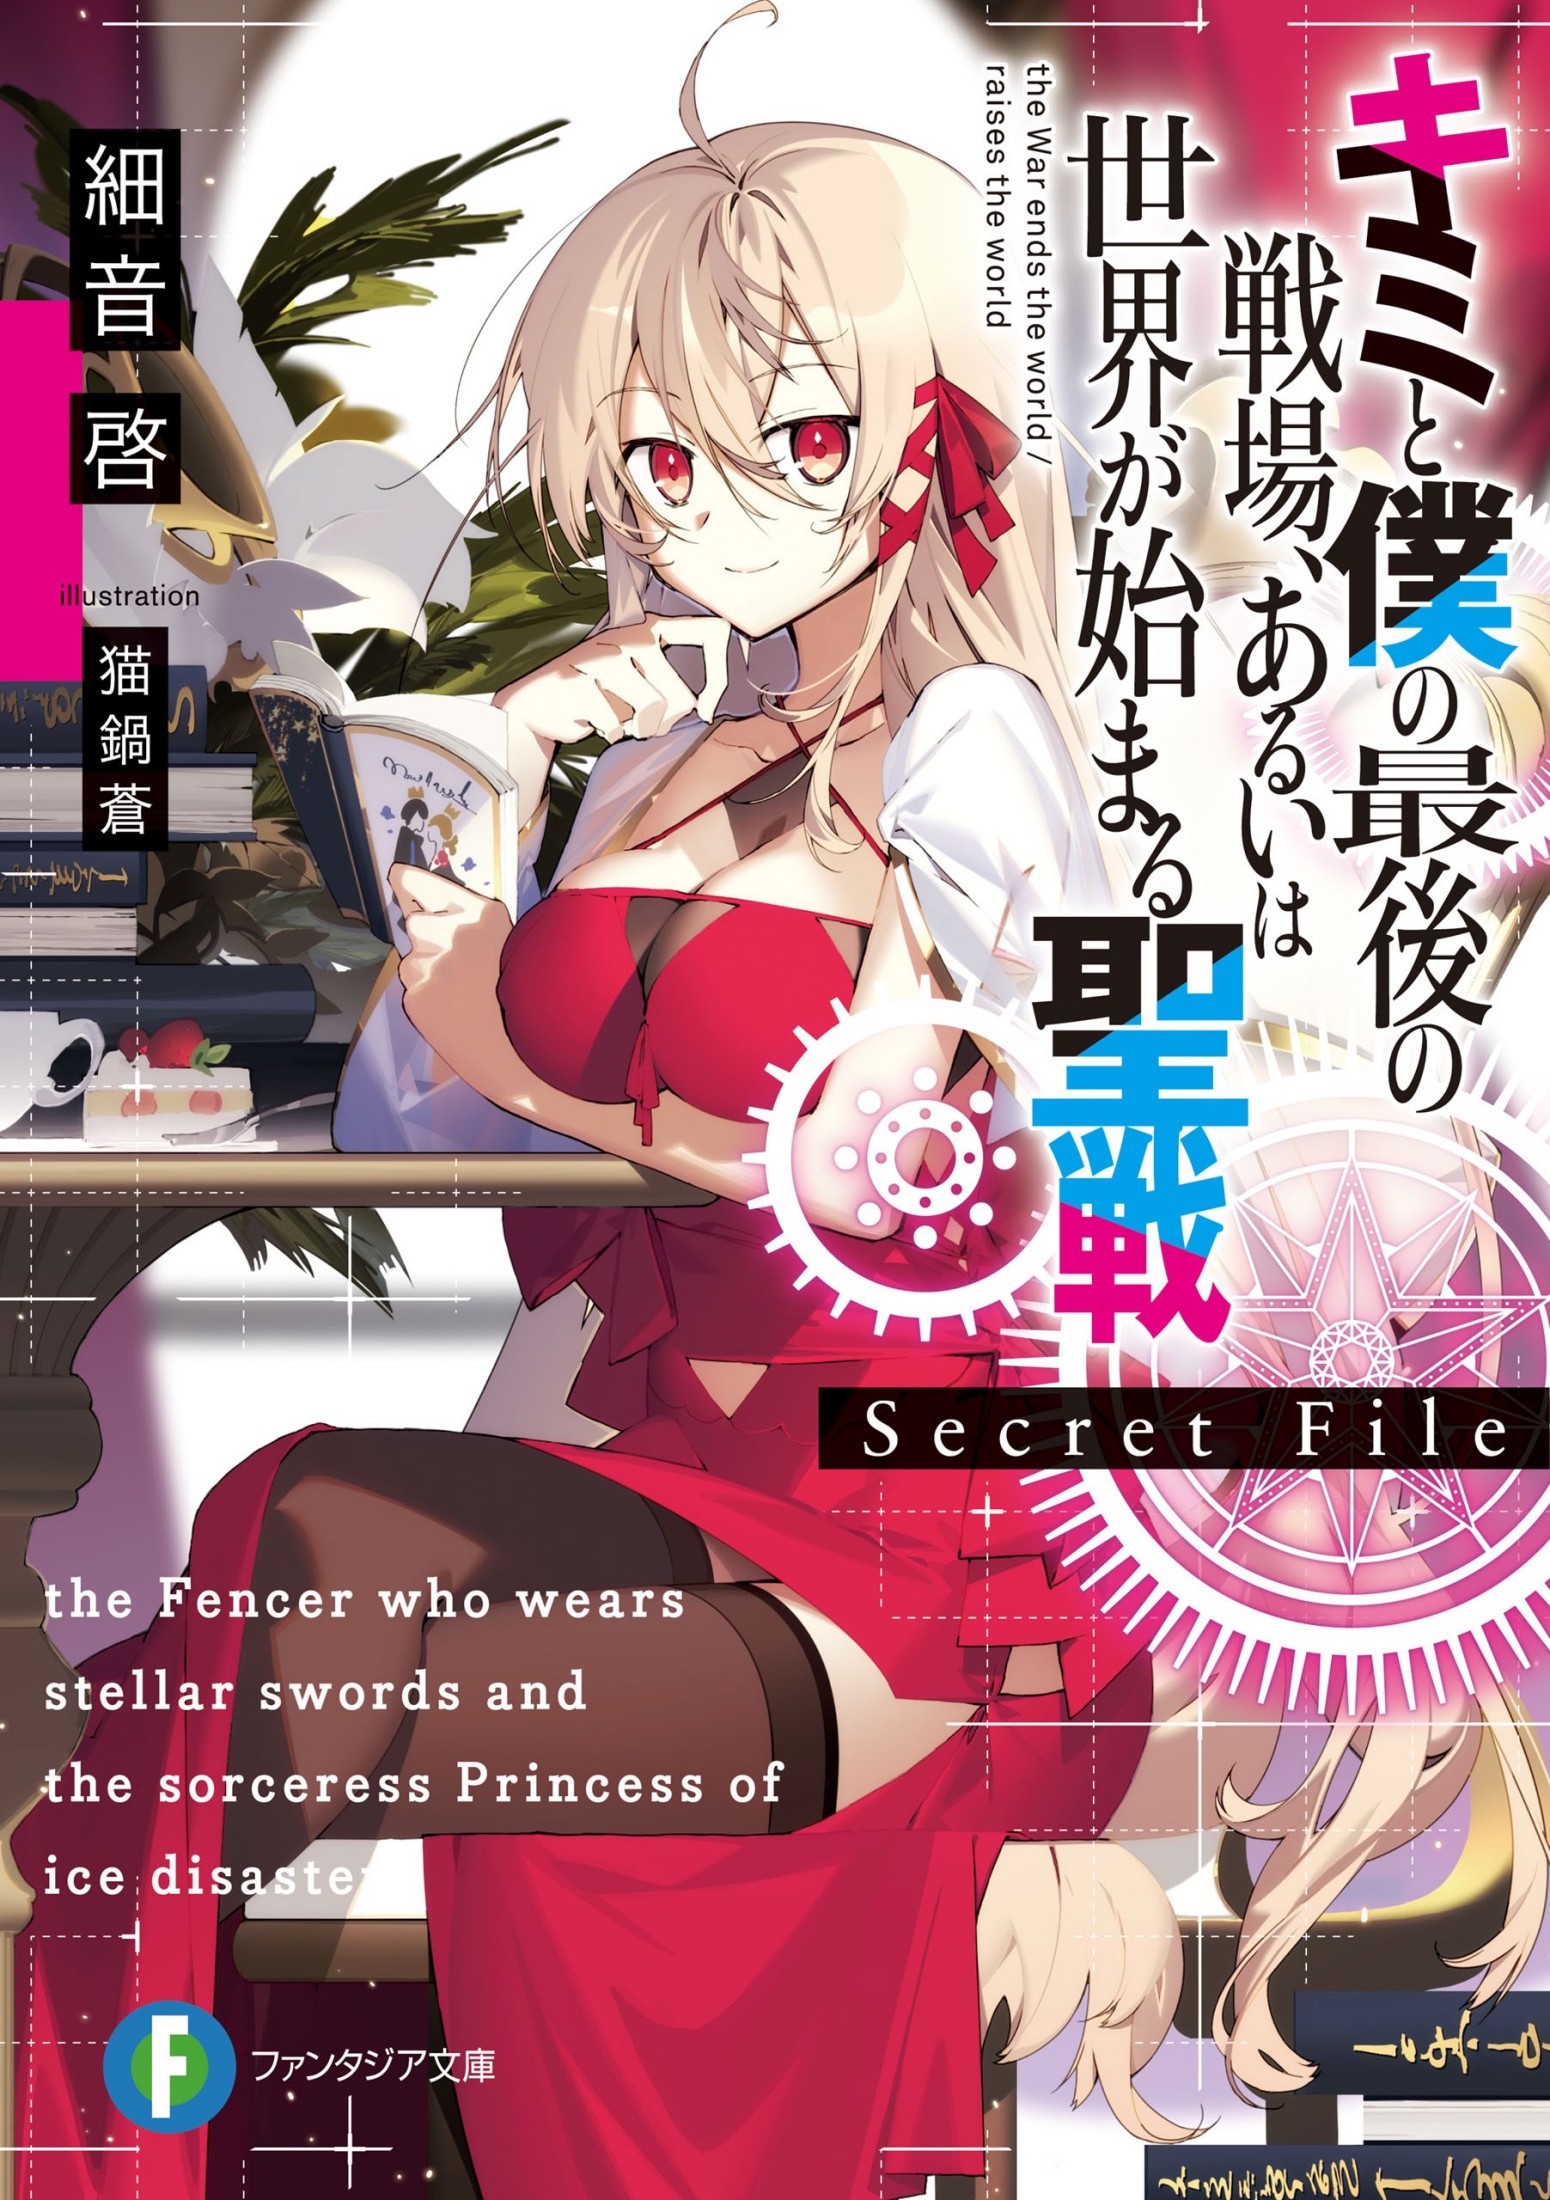 Light Novel Volume 2, KimiSen Wiki, Fandom